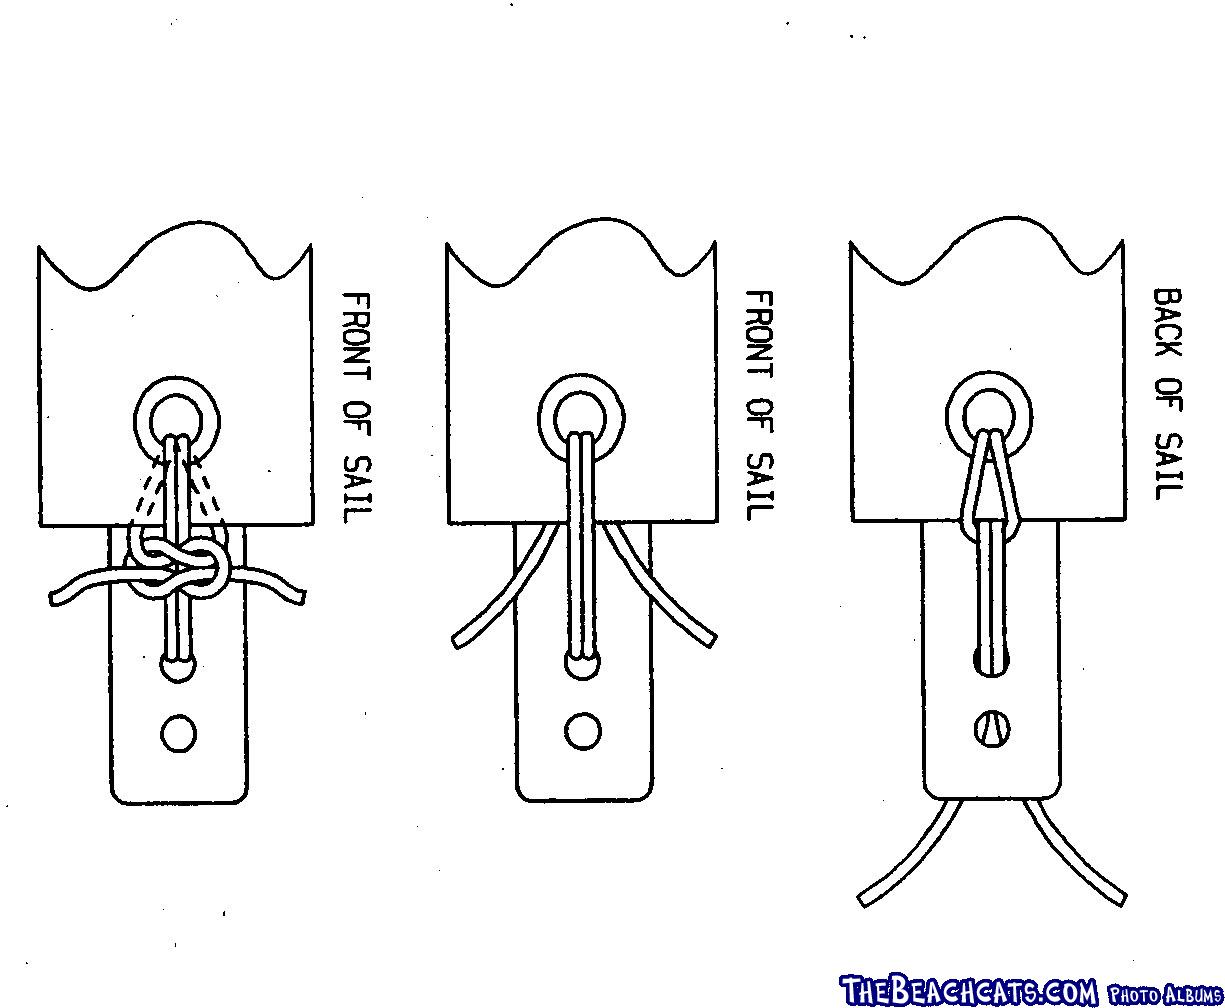 Single Hole Batten Tie from Hobie 20 Manual